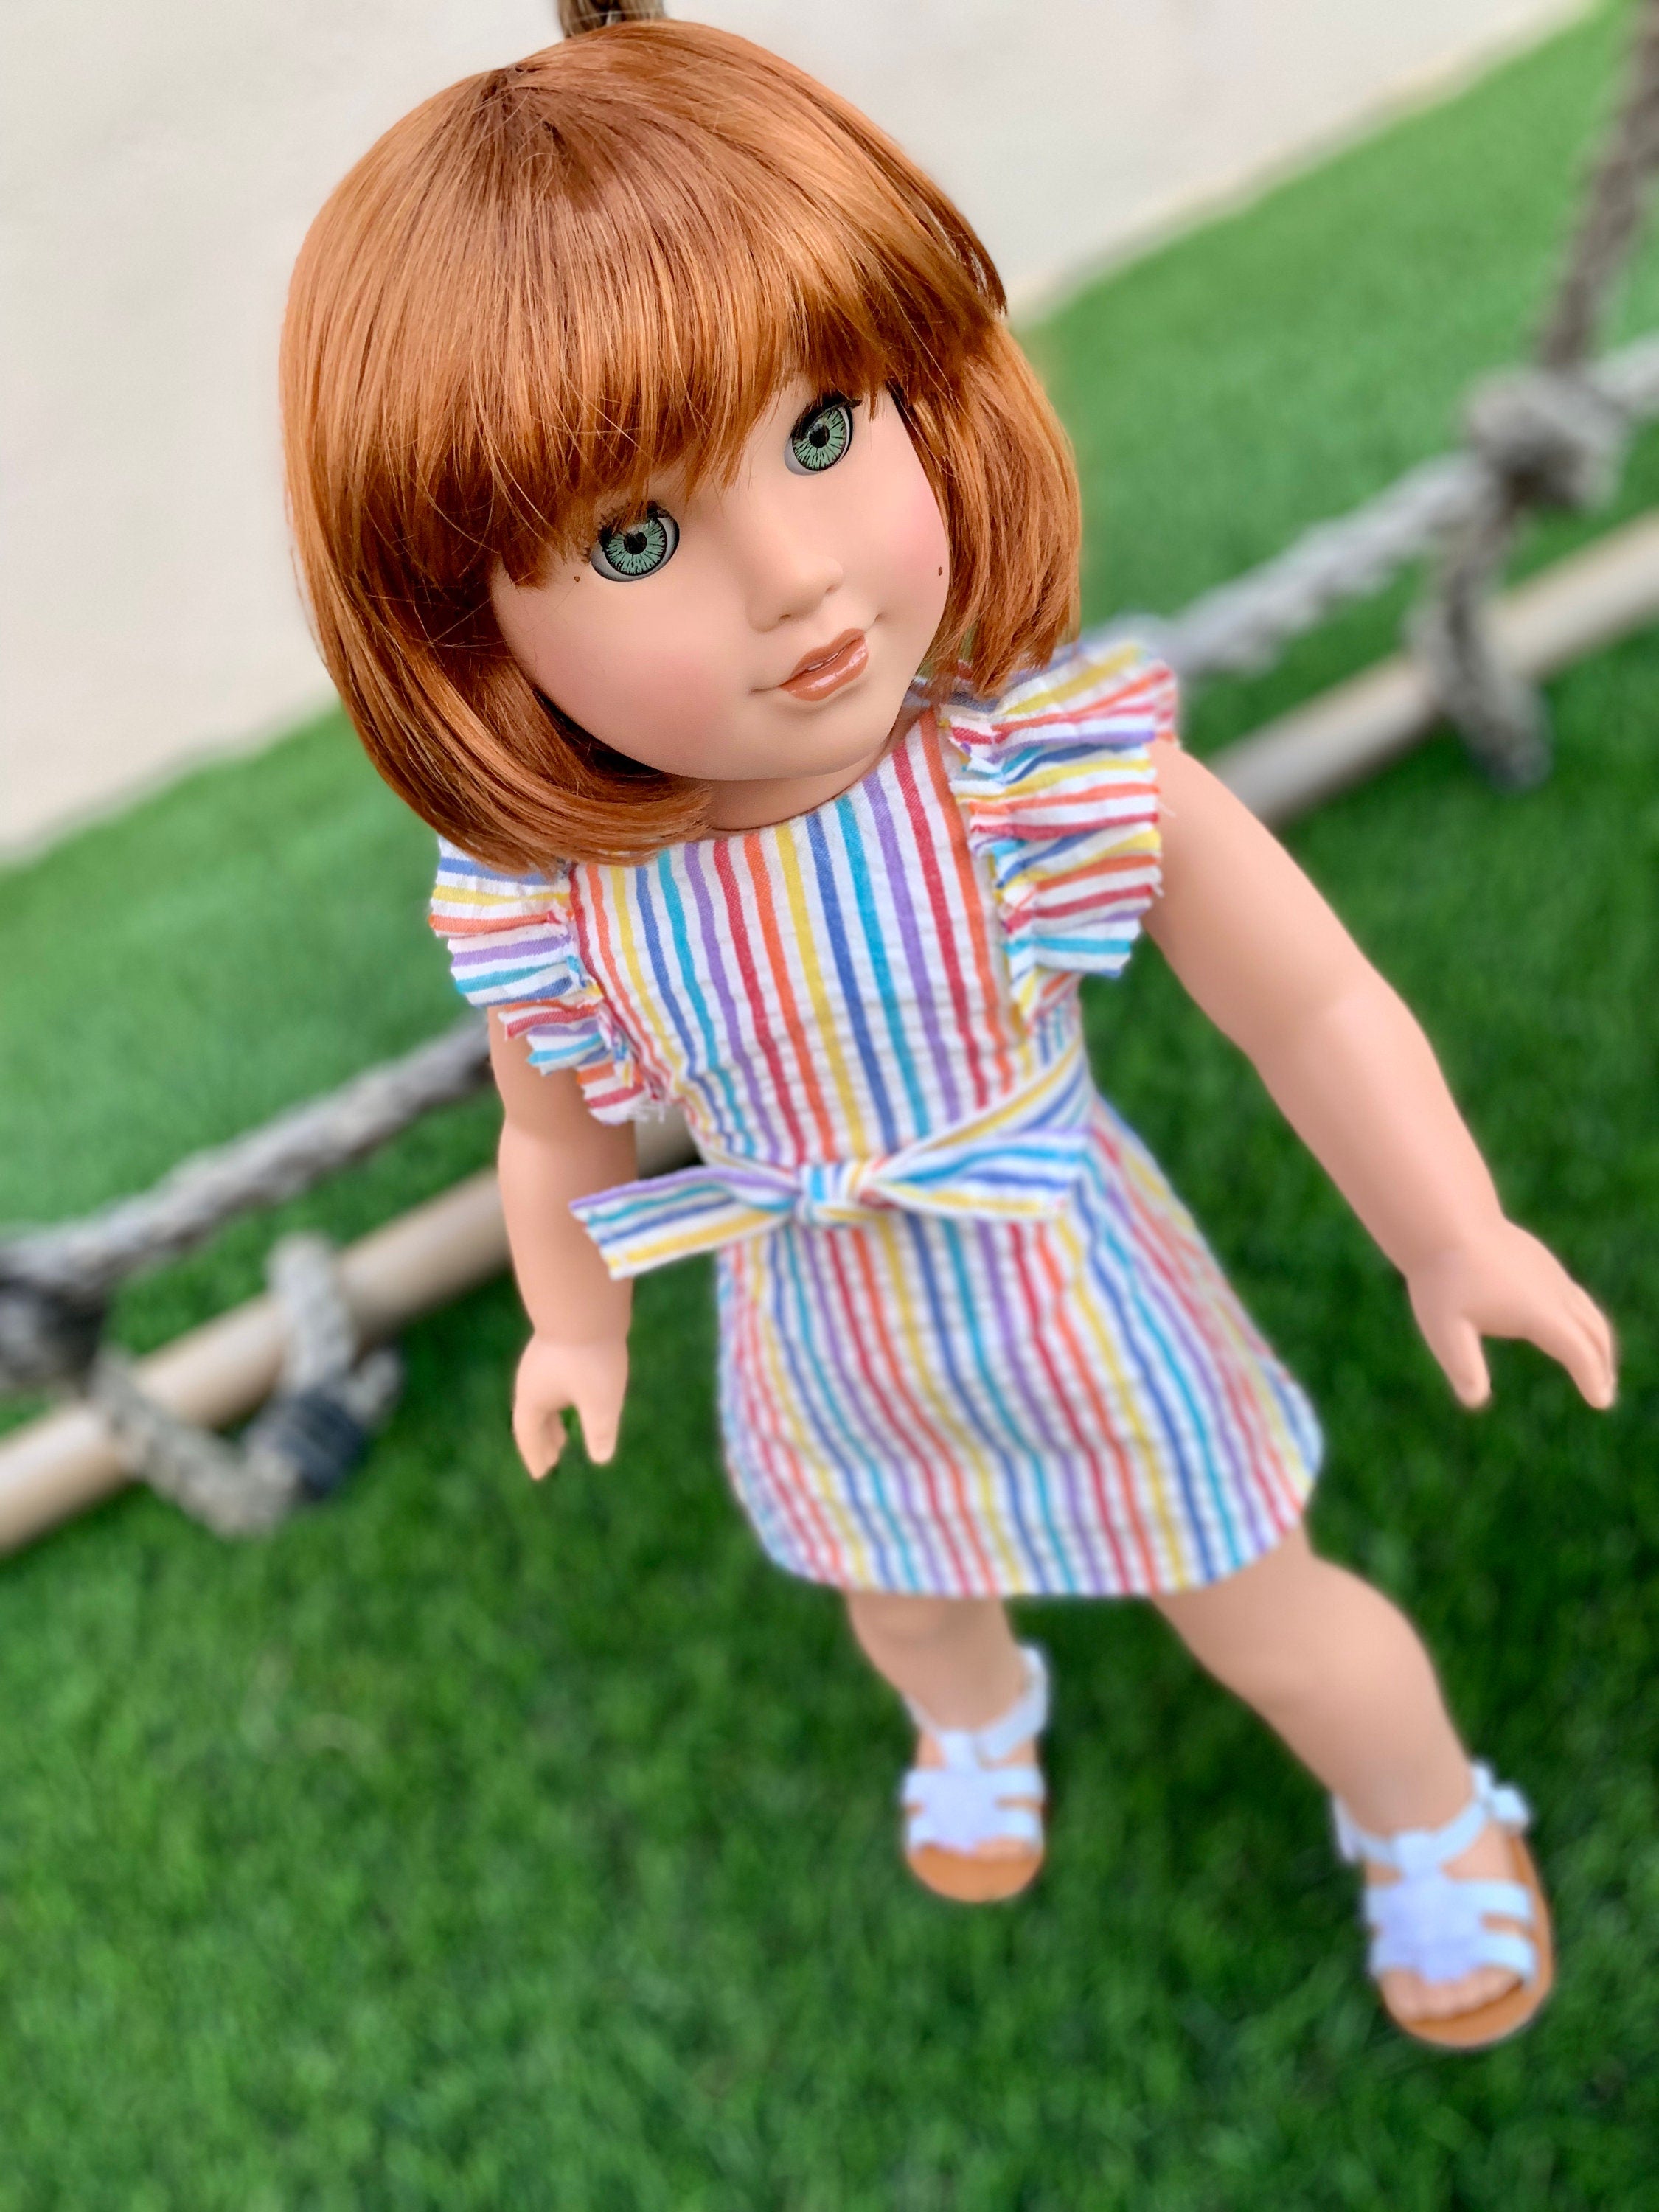 Custom doll wig for 18" American Girl Dolls - Vegan Mohair - fits 10-11" head size of  dolls such as OG Blythe BJD Gotz meadowdolls